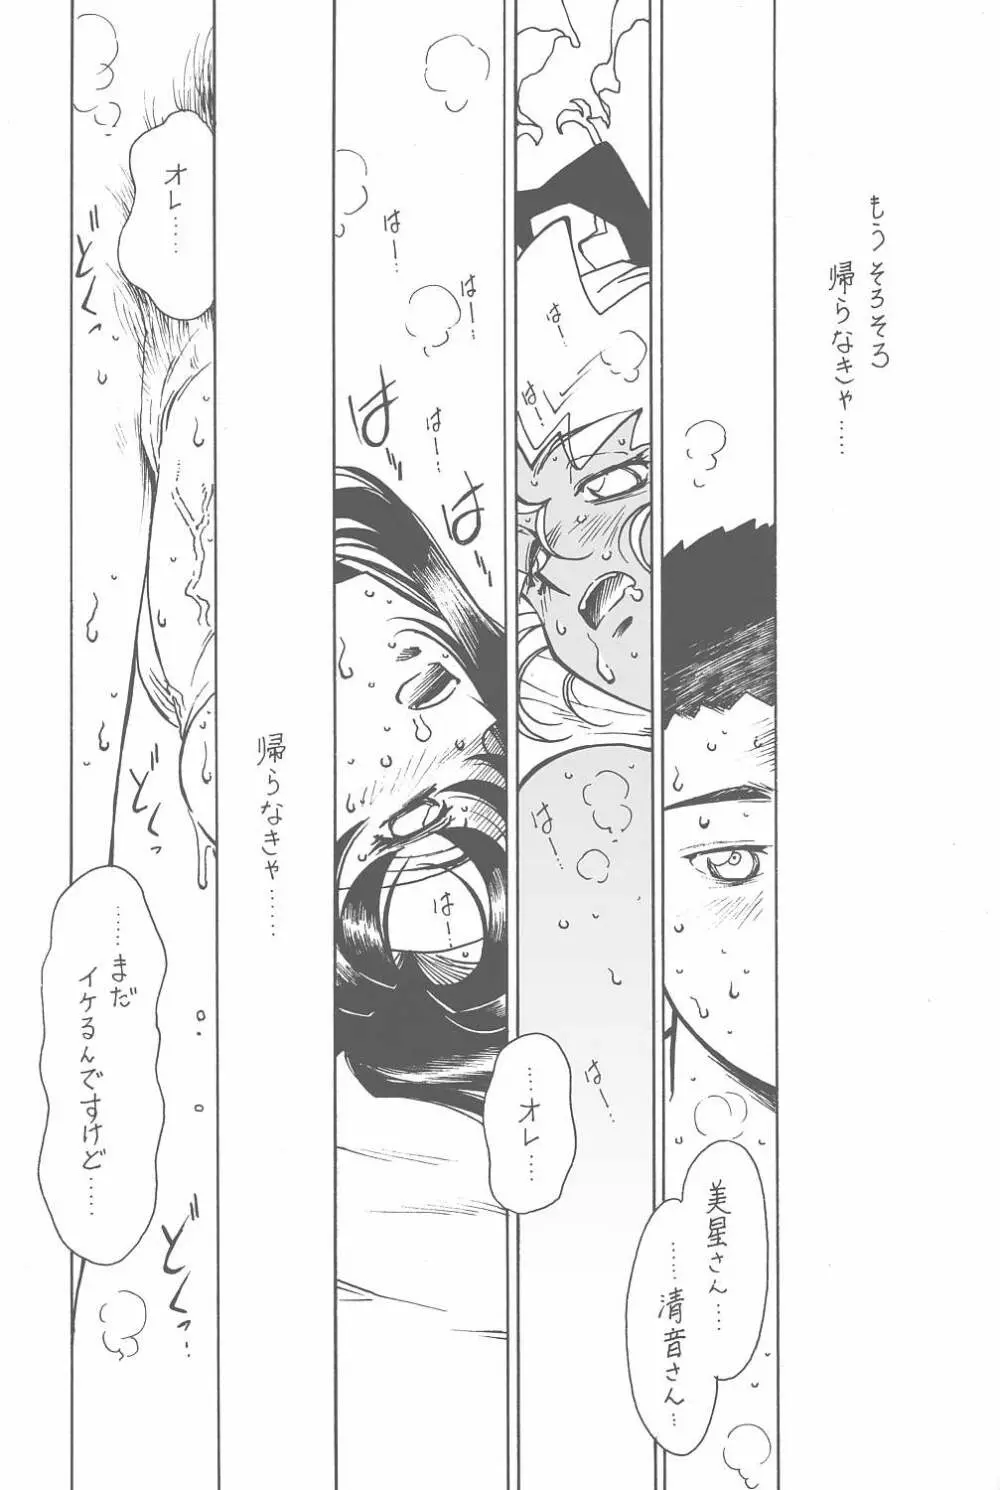 凶悪的指導 Vol.11 じゅんび号 Version 3 20ページ